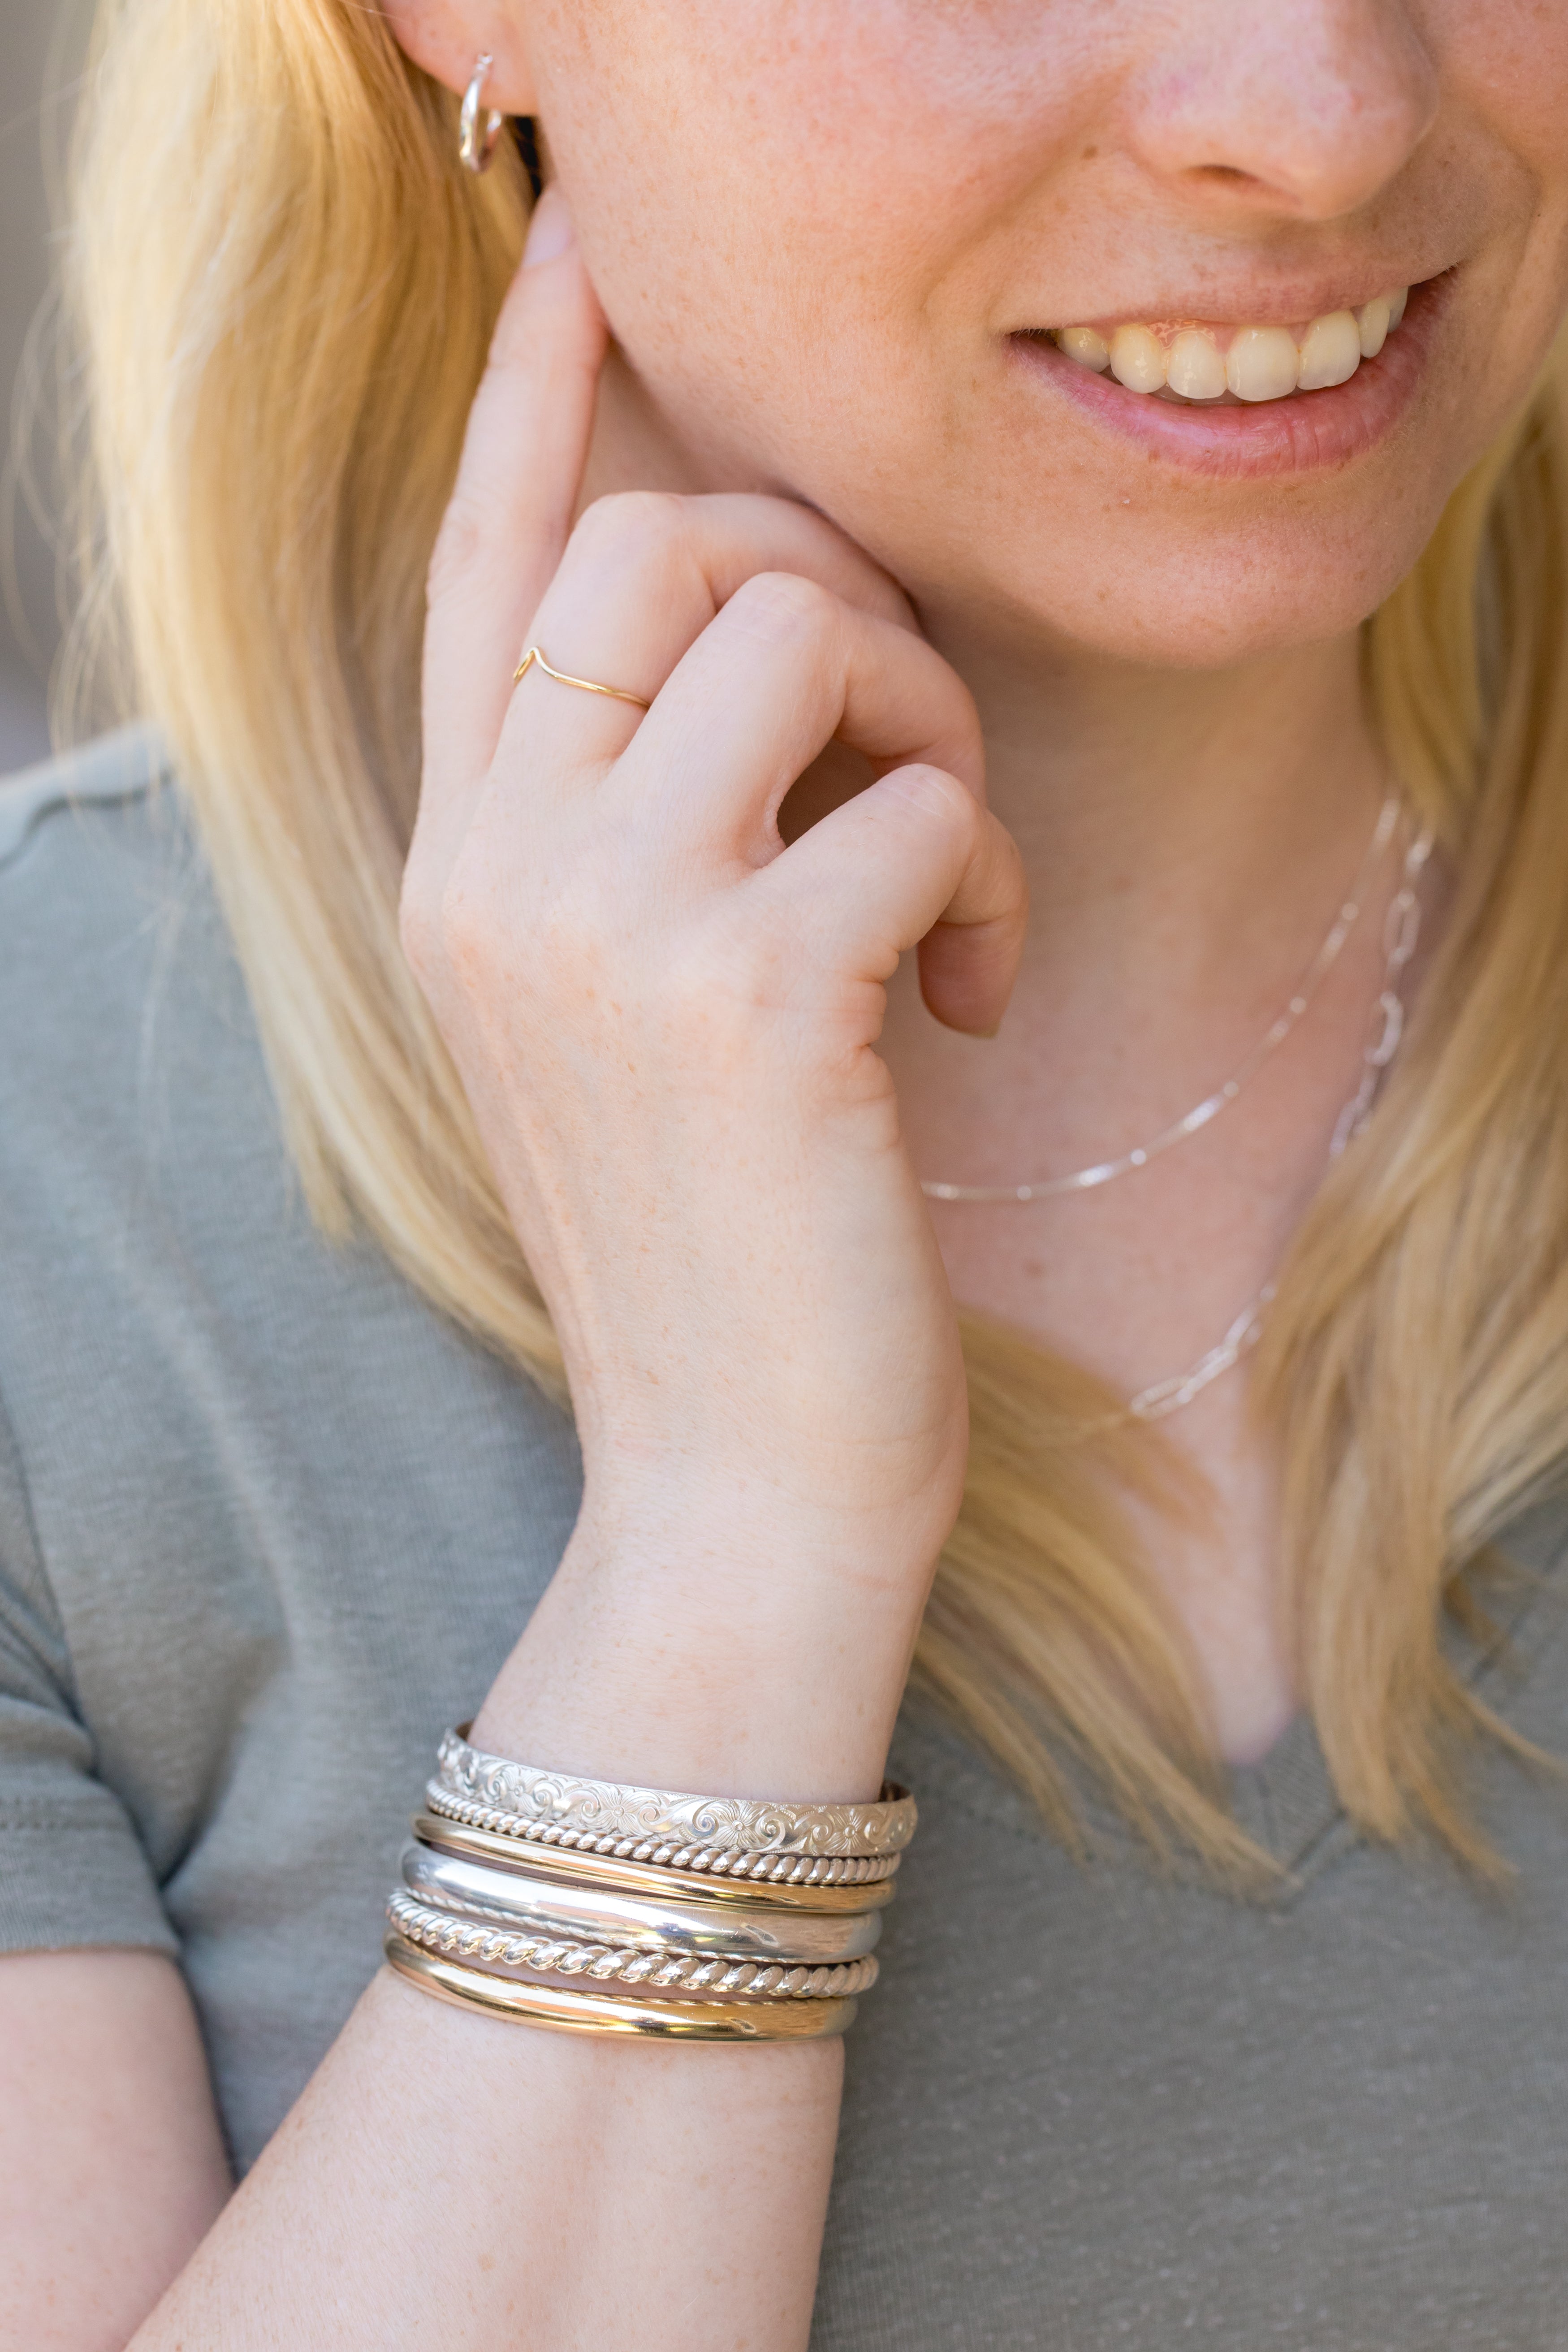 Silver Bracelet - Stainless Steel Bangle Bracelets For Women with love  heart trendy Jewelry - Walmart.com